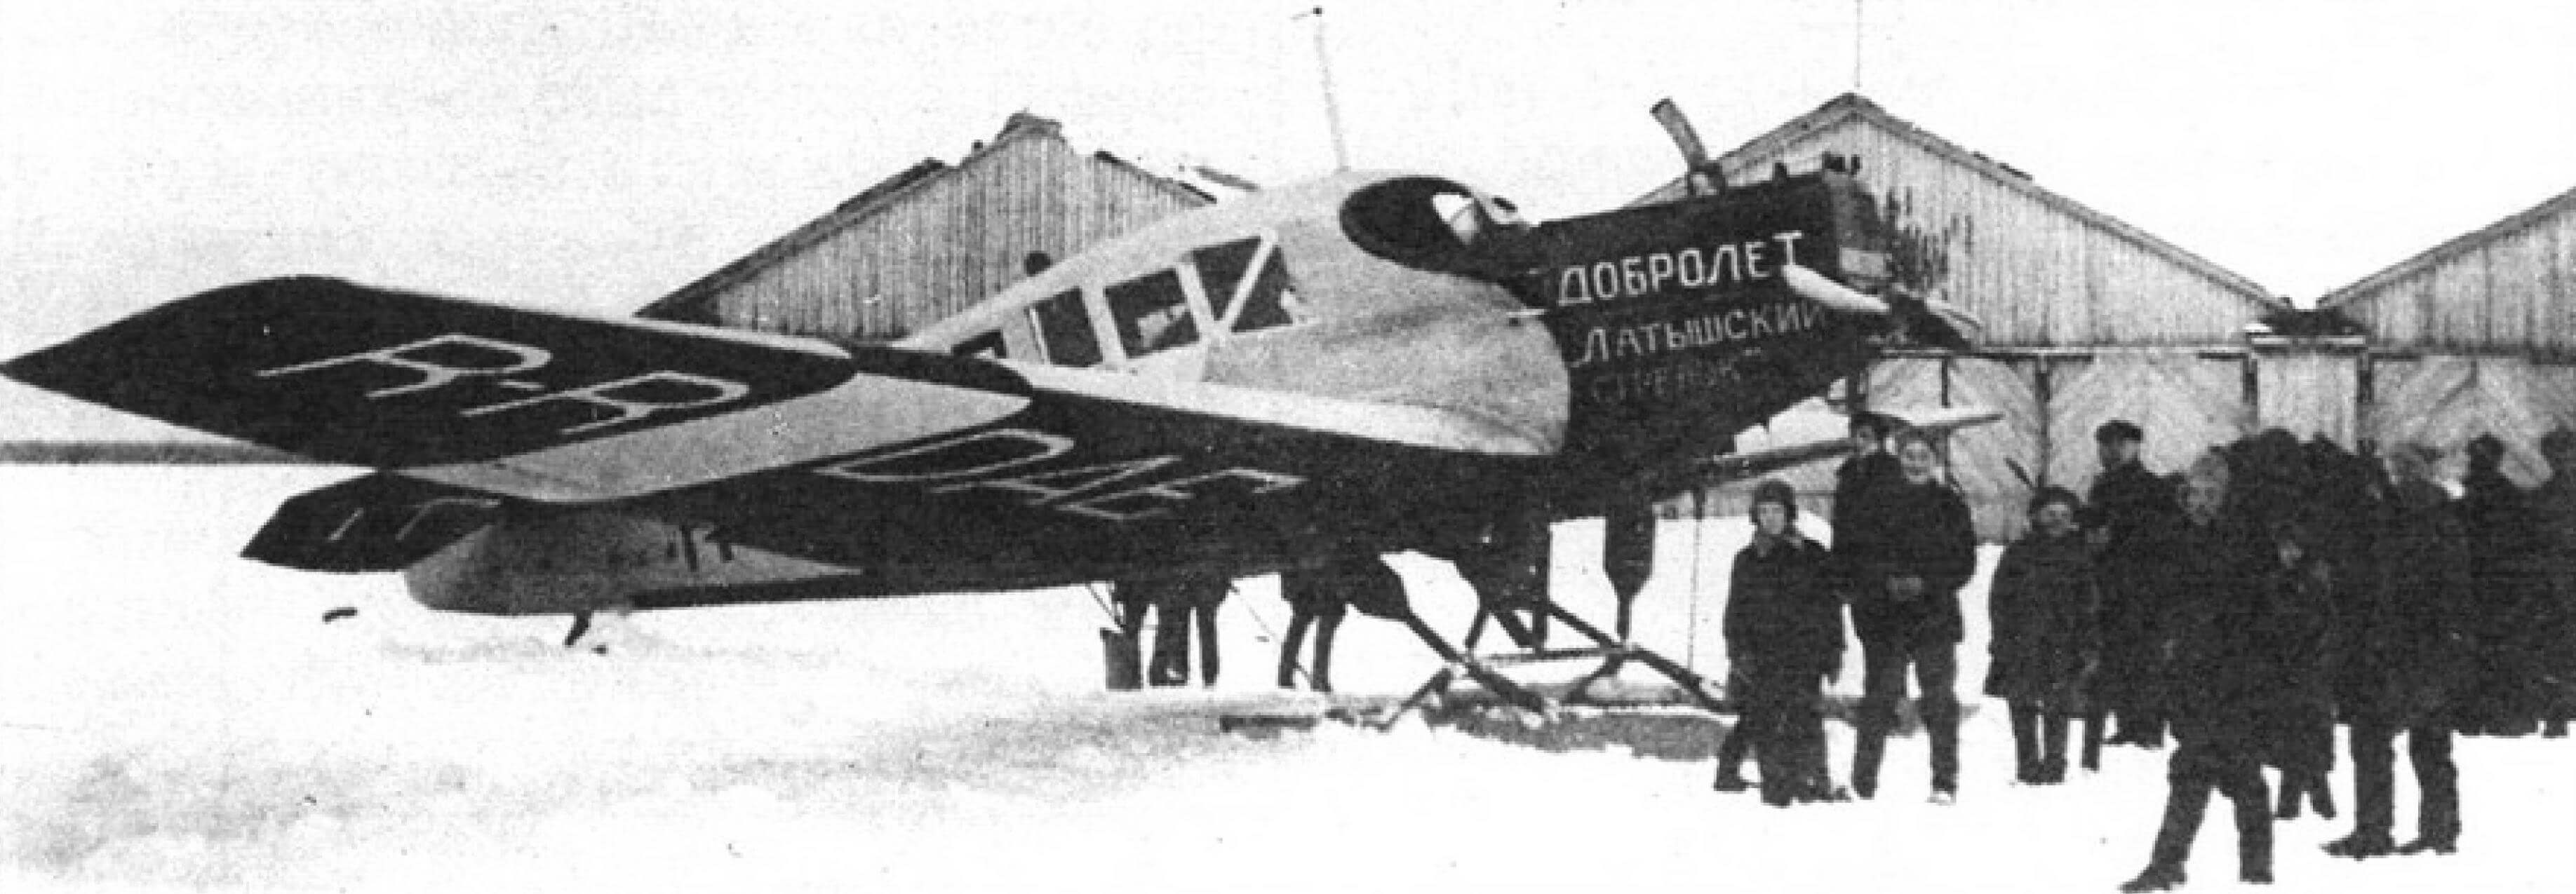 Самолет Ю-13 «Латышский стрелок» в Архангельске